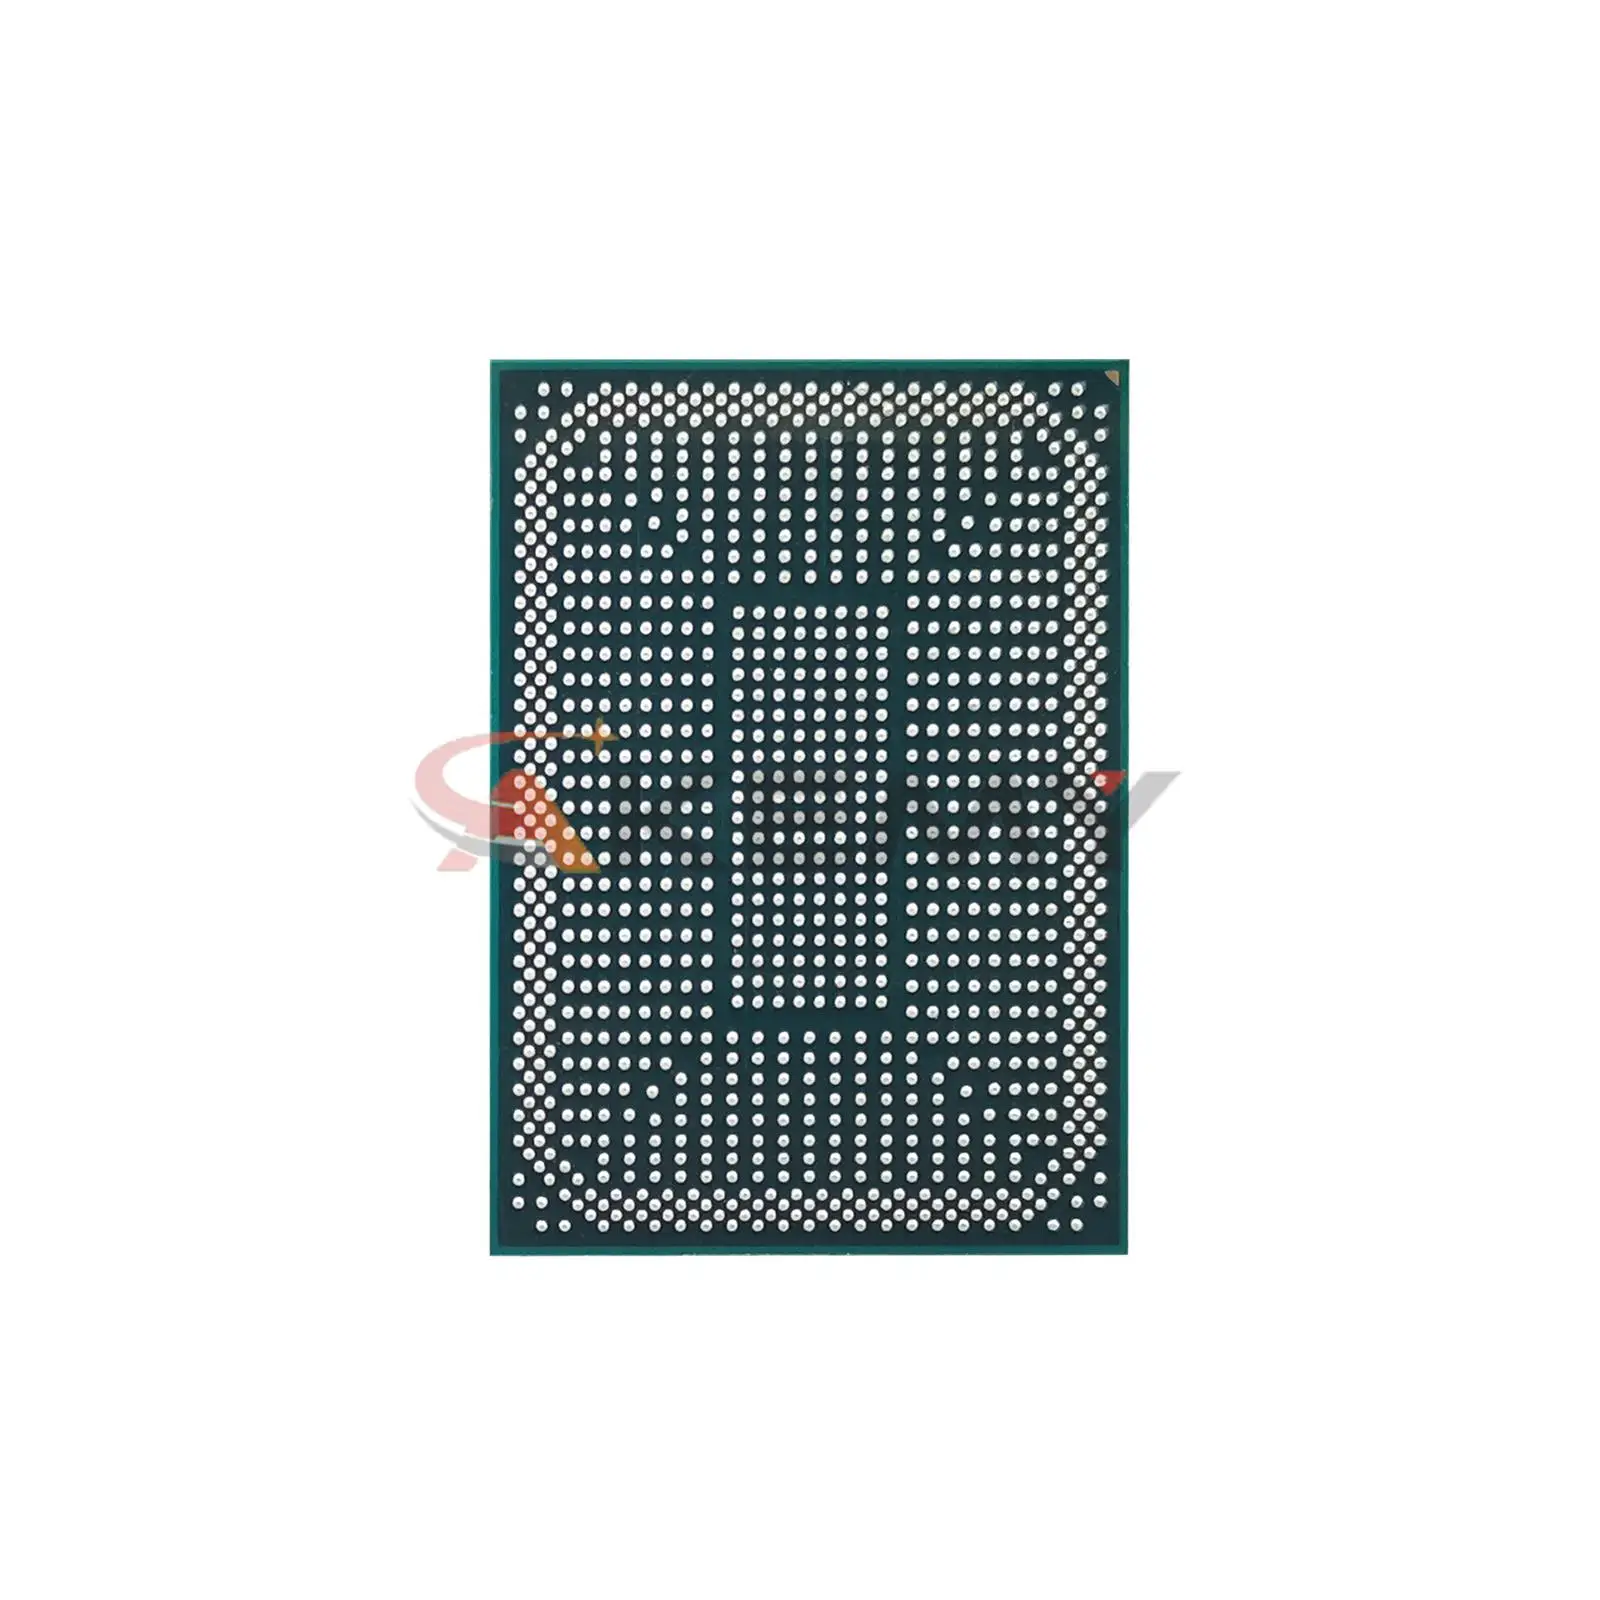 100% nuovo Chipset CPU BGA 100-000000103